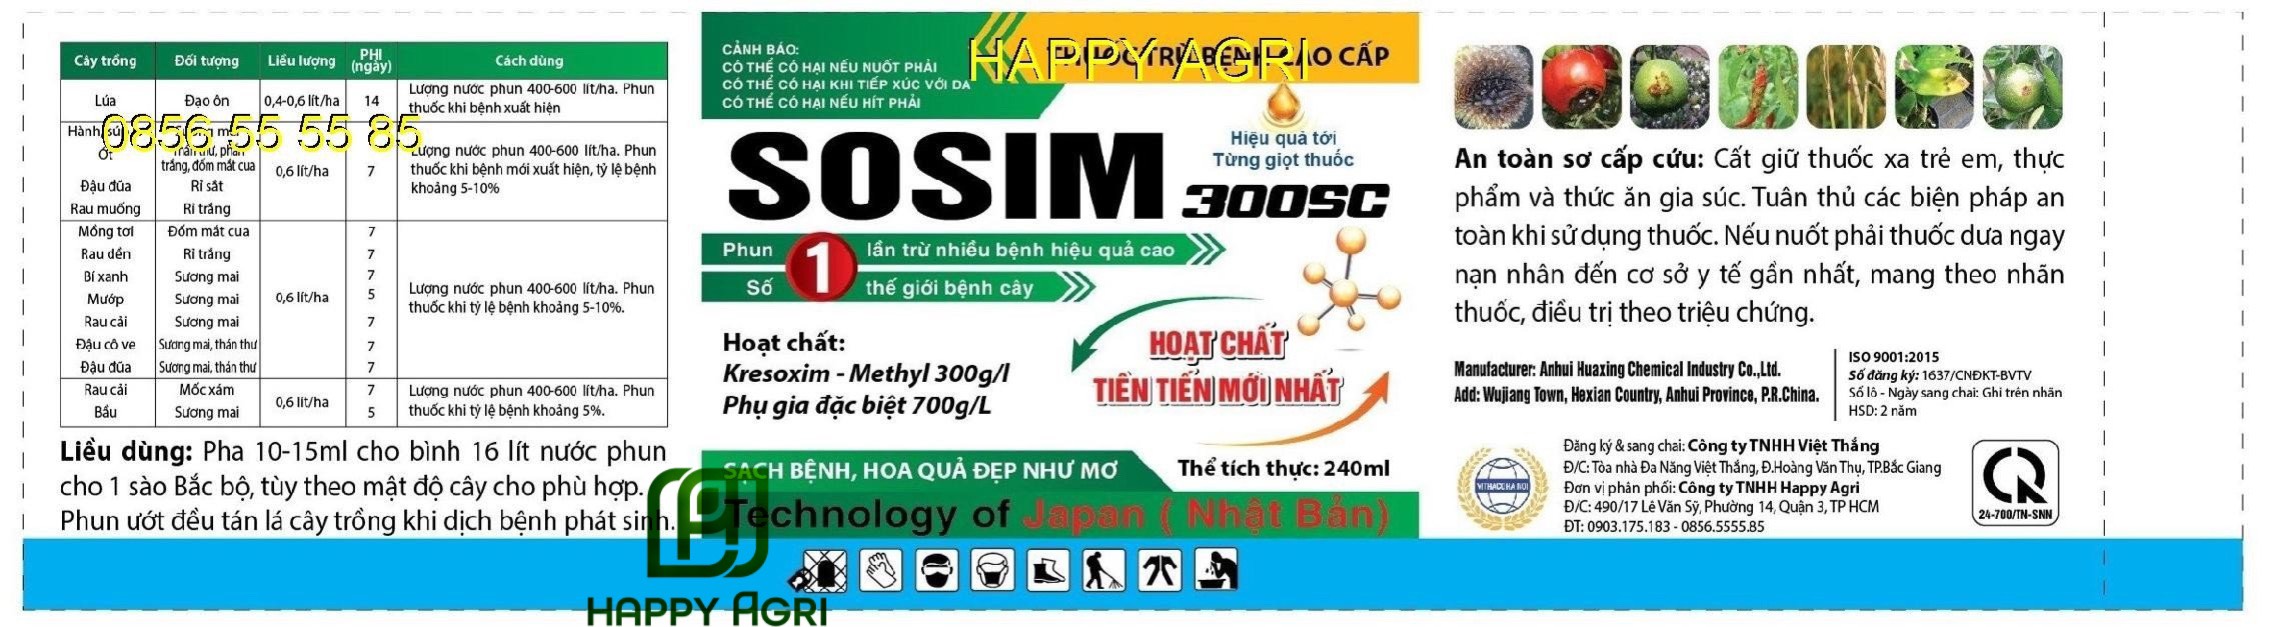 SOSIM 300SC - Hoạt chất tiên tiến mới nhất